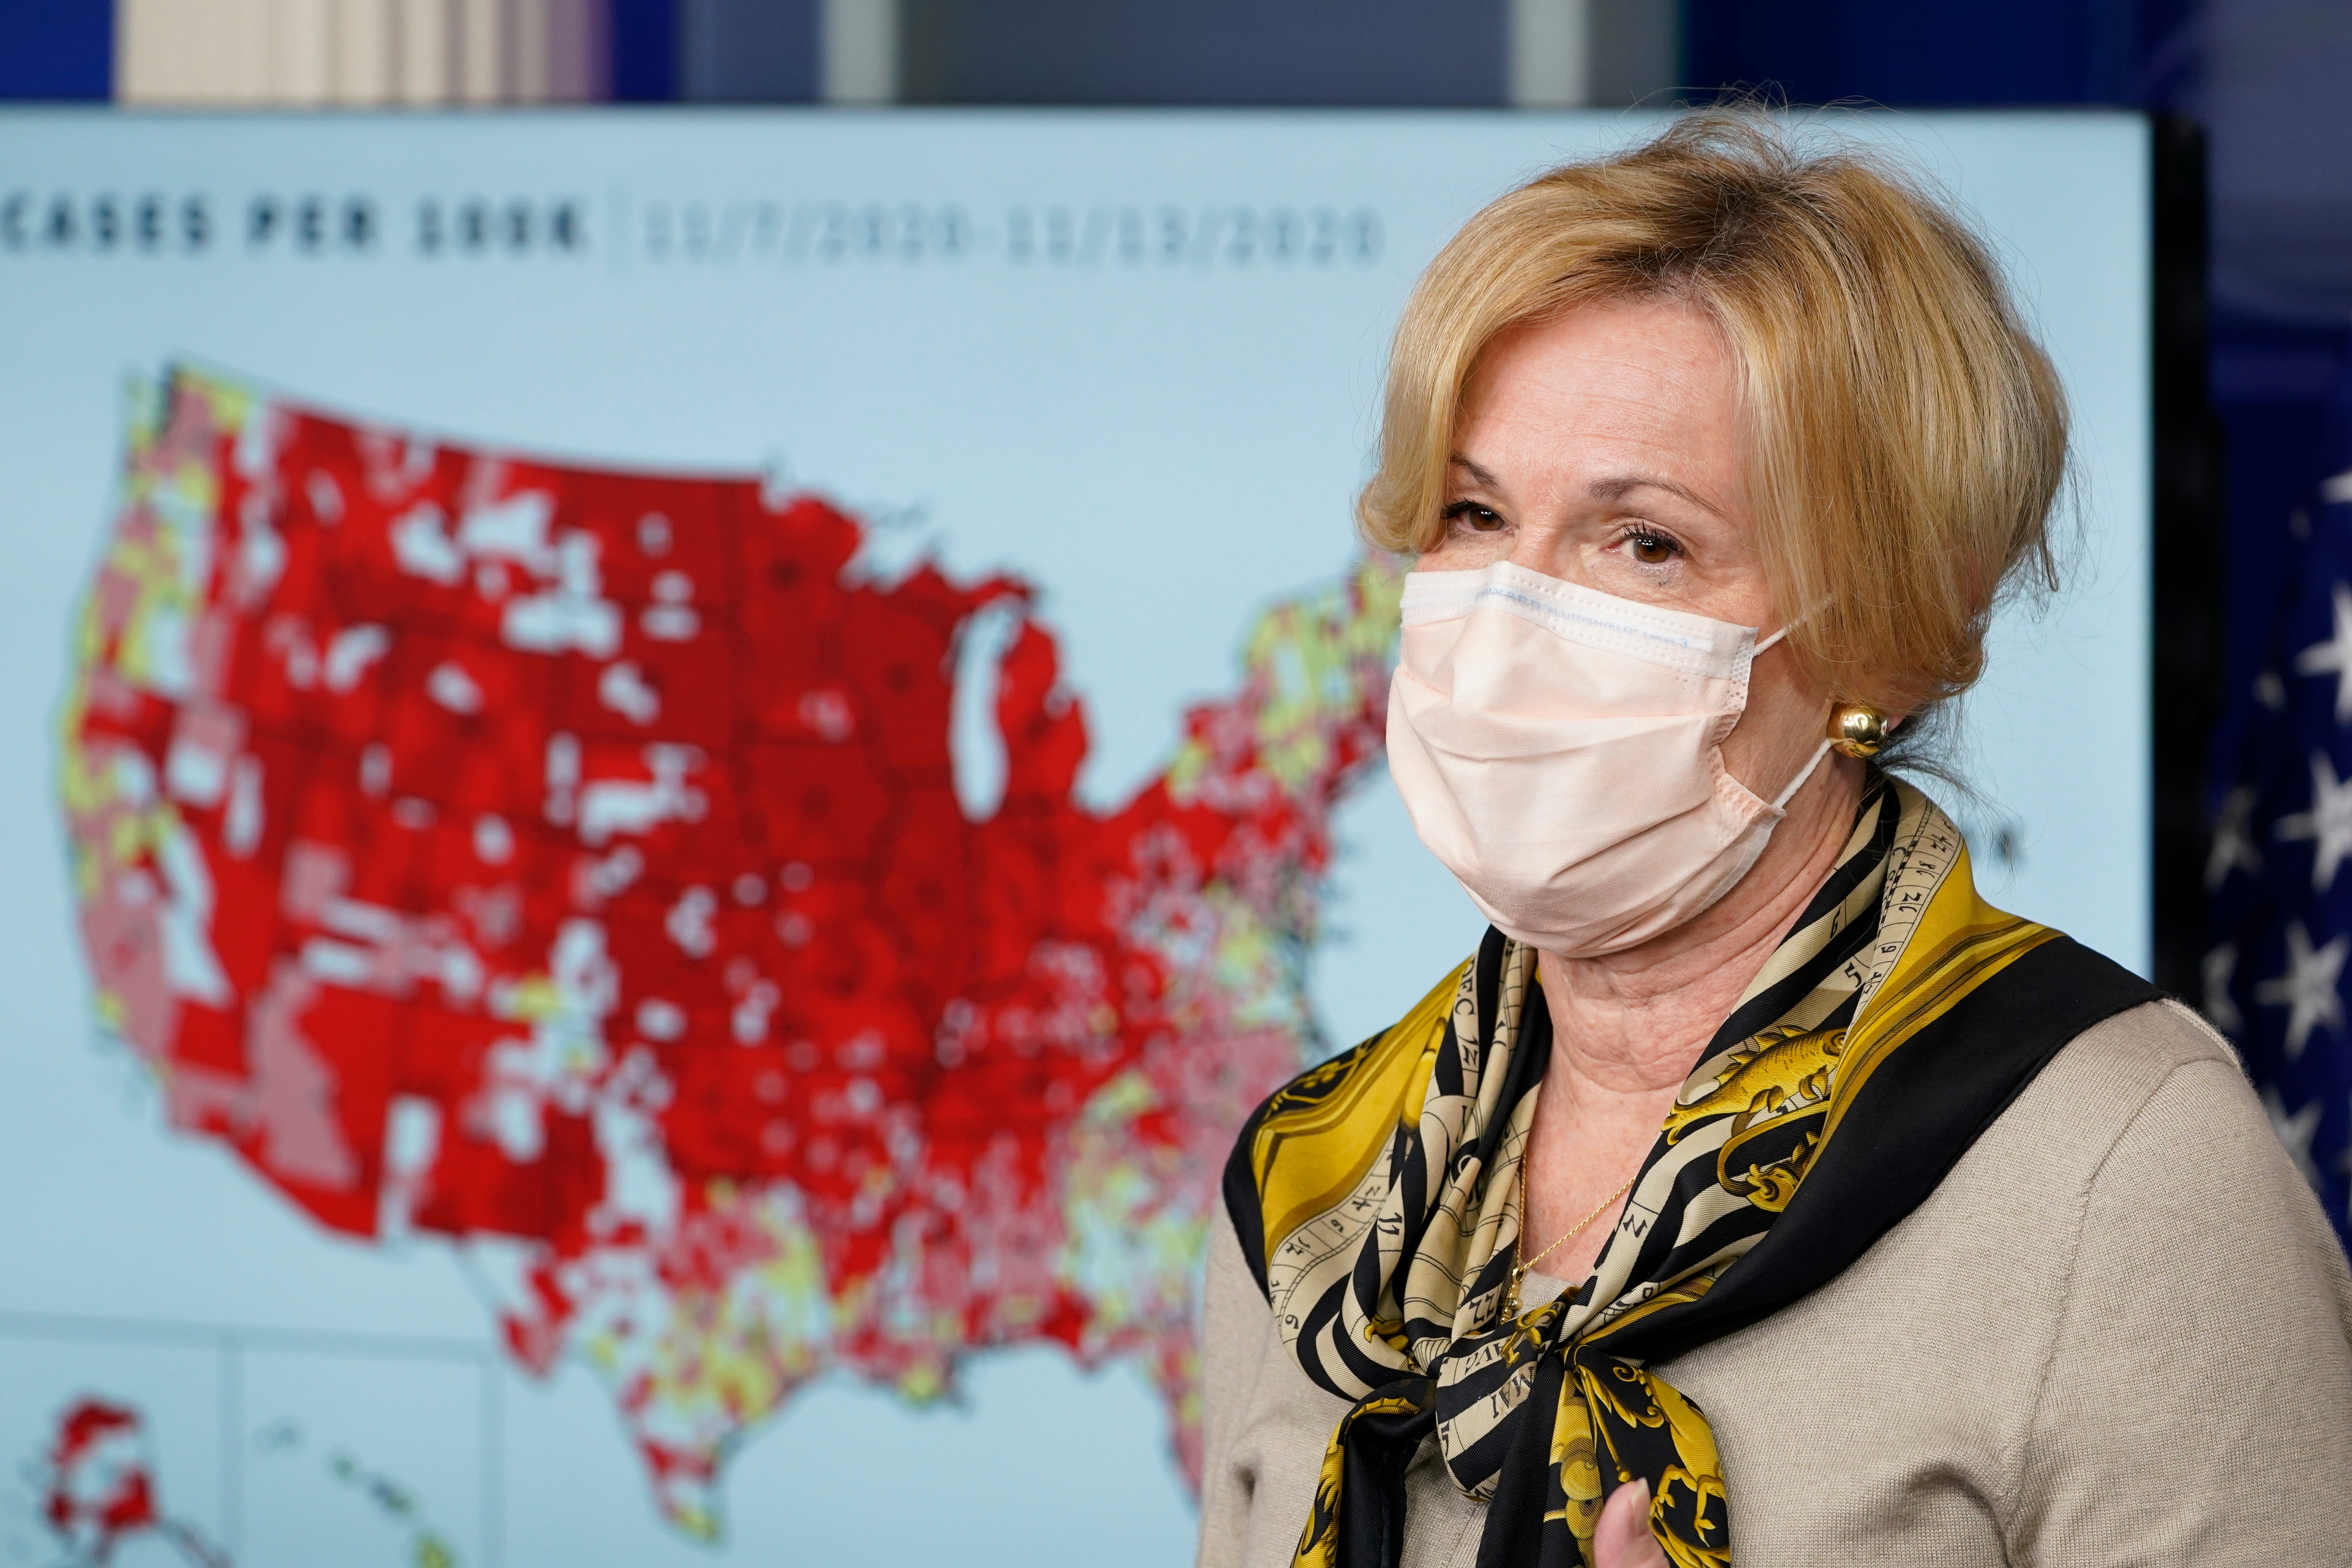 Fotografía de archivo del 19 de noviembre de 2020 de la coordinadora de la respuesta al coronavirus de la Casa Blanca, doctora Deborah Birx, durante una conferencia de prensa en la Casa Blanca en Washington.&nbsp;